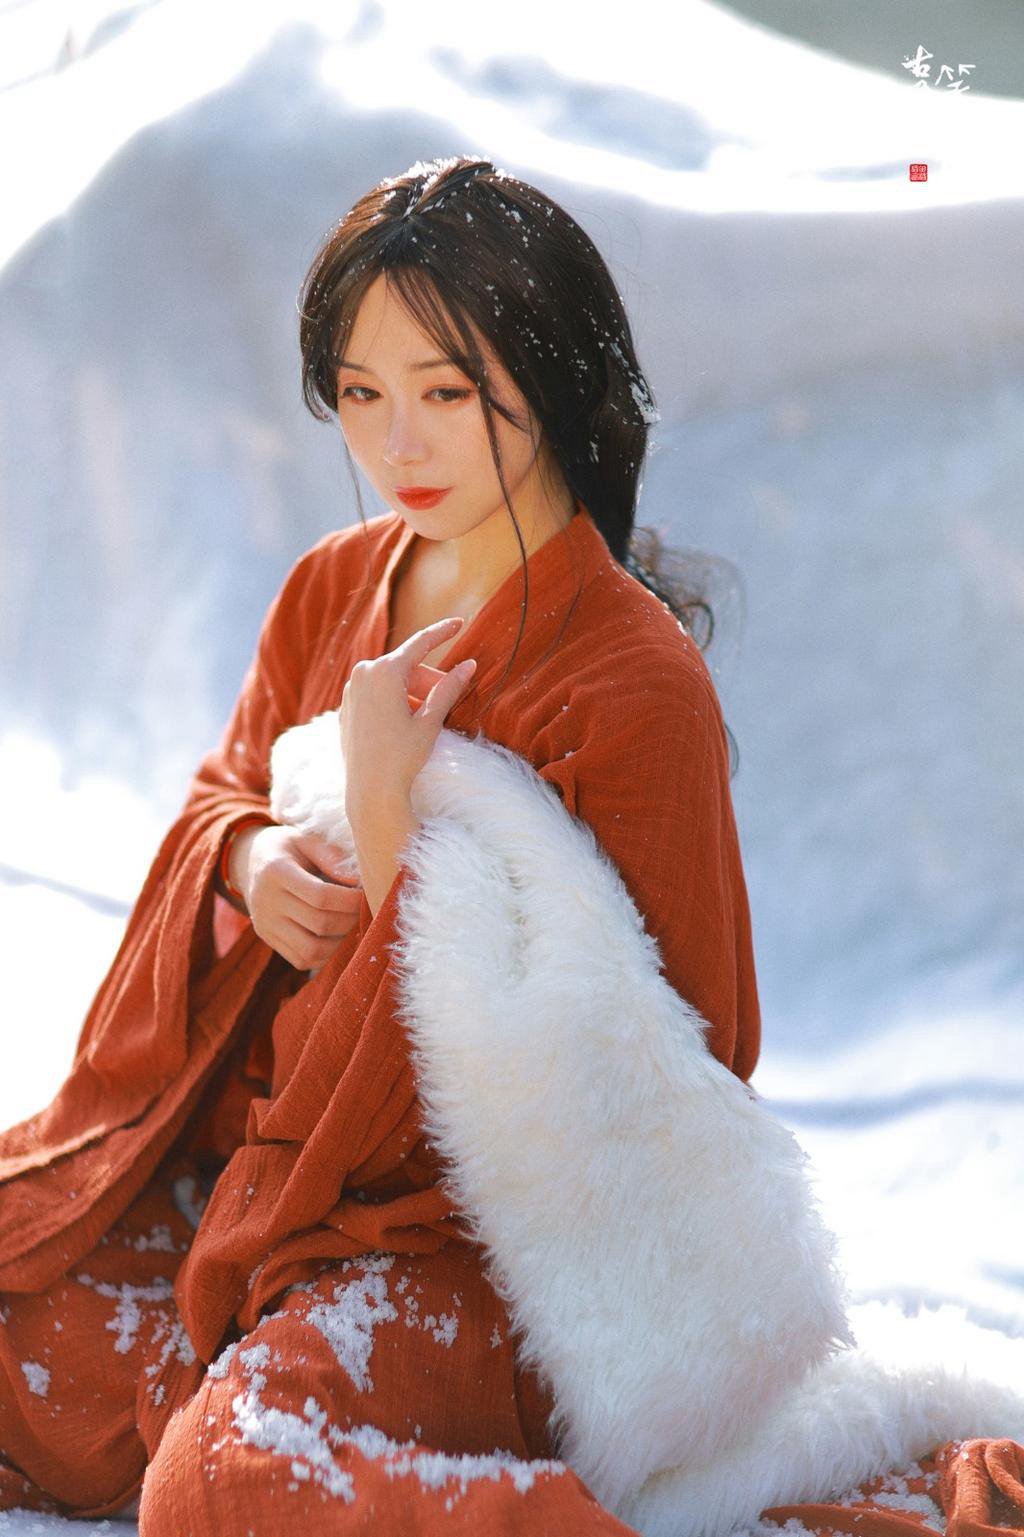 雪景中的汉服美女红妆极品身材小美女啪啪自拍图片